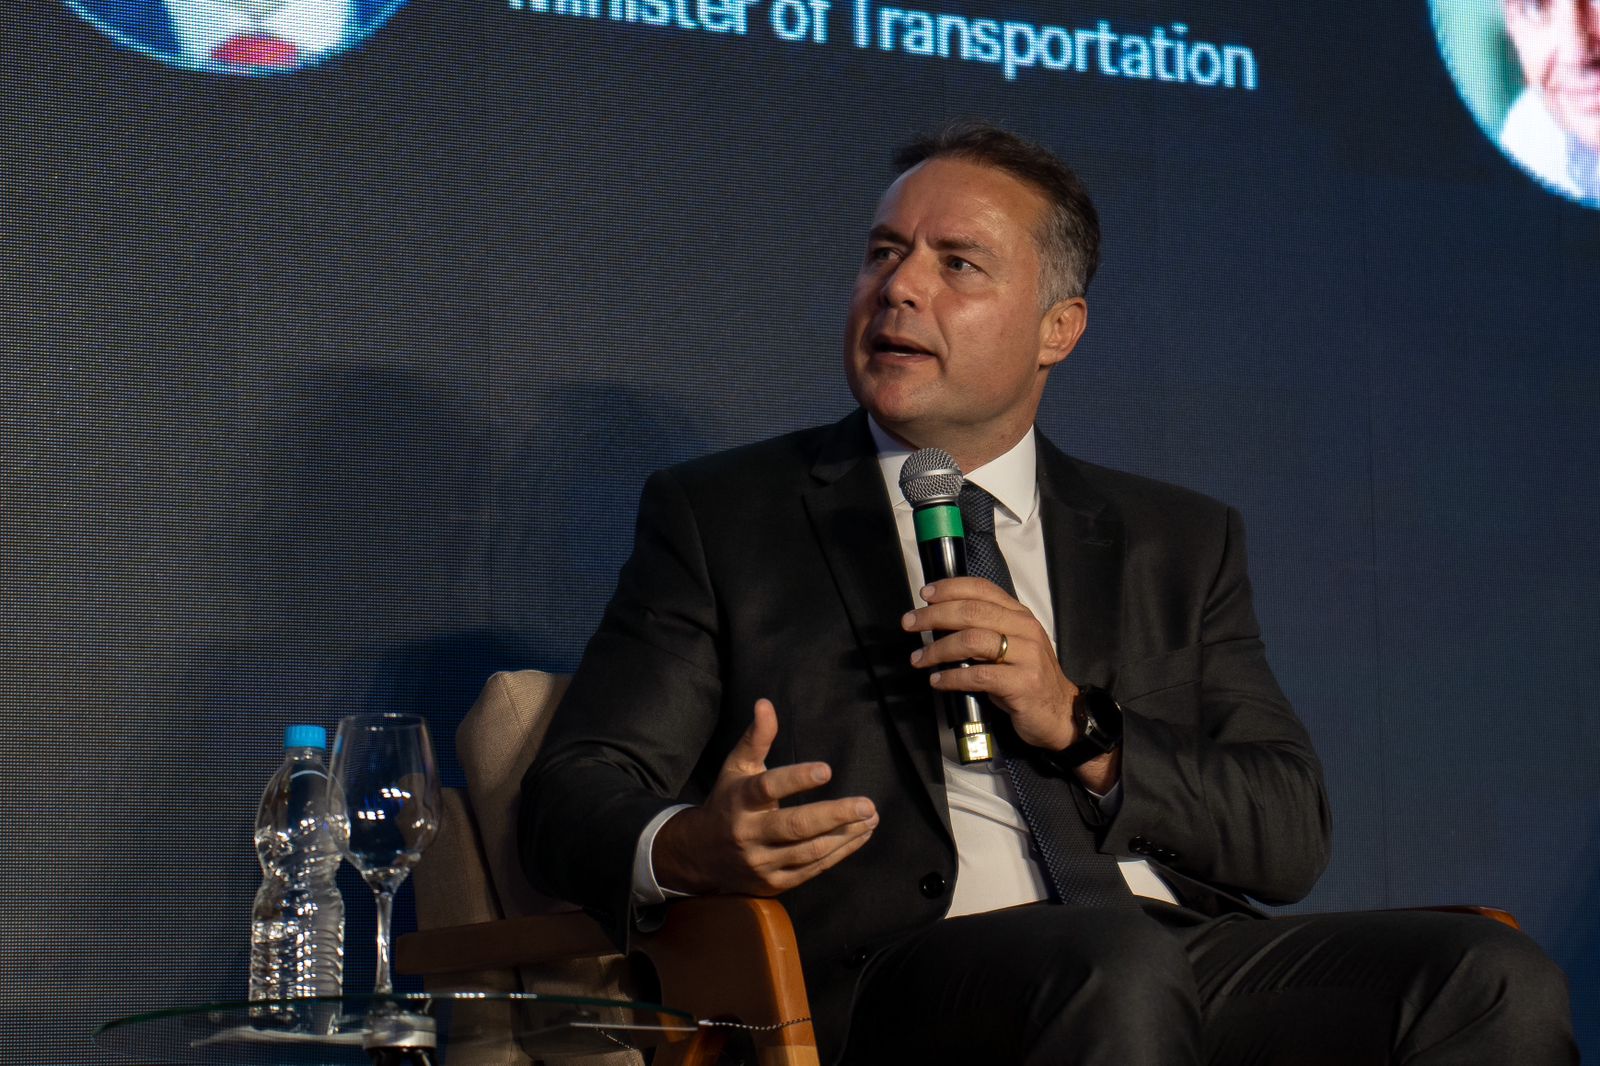 O ministro dos Transportes, Renan Calheiros Filho (MDB), durante evento promovido pela XP, em São Paulo (Foto: Leandro França/XP)